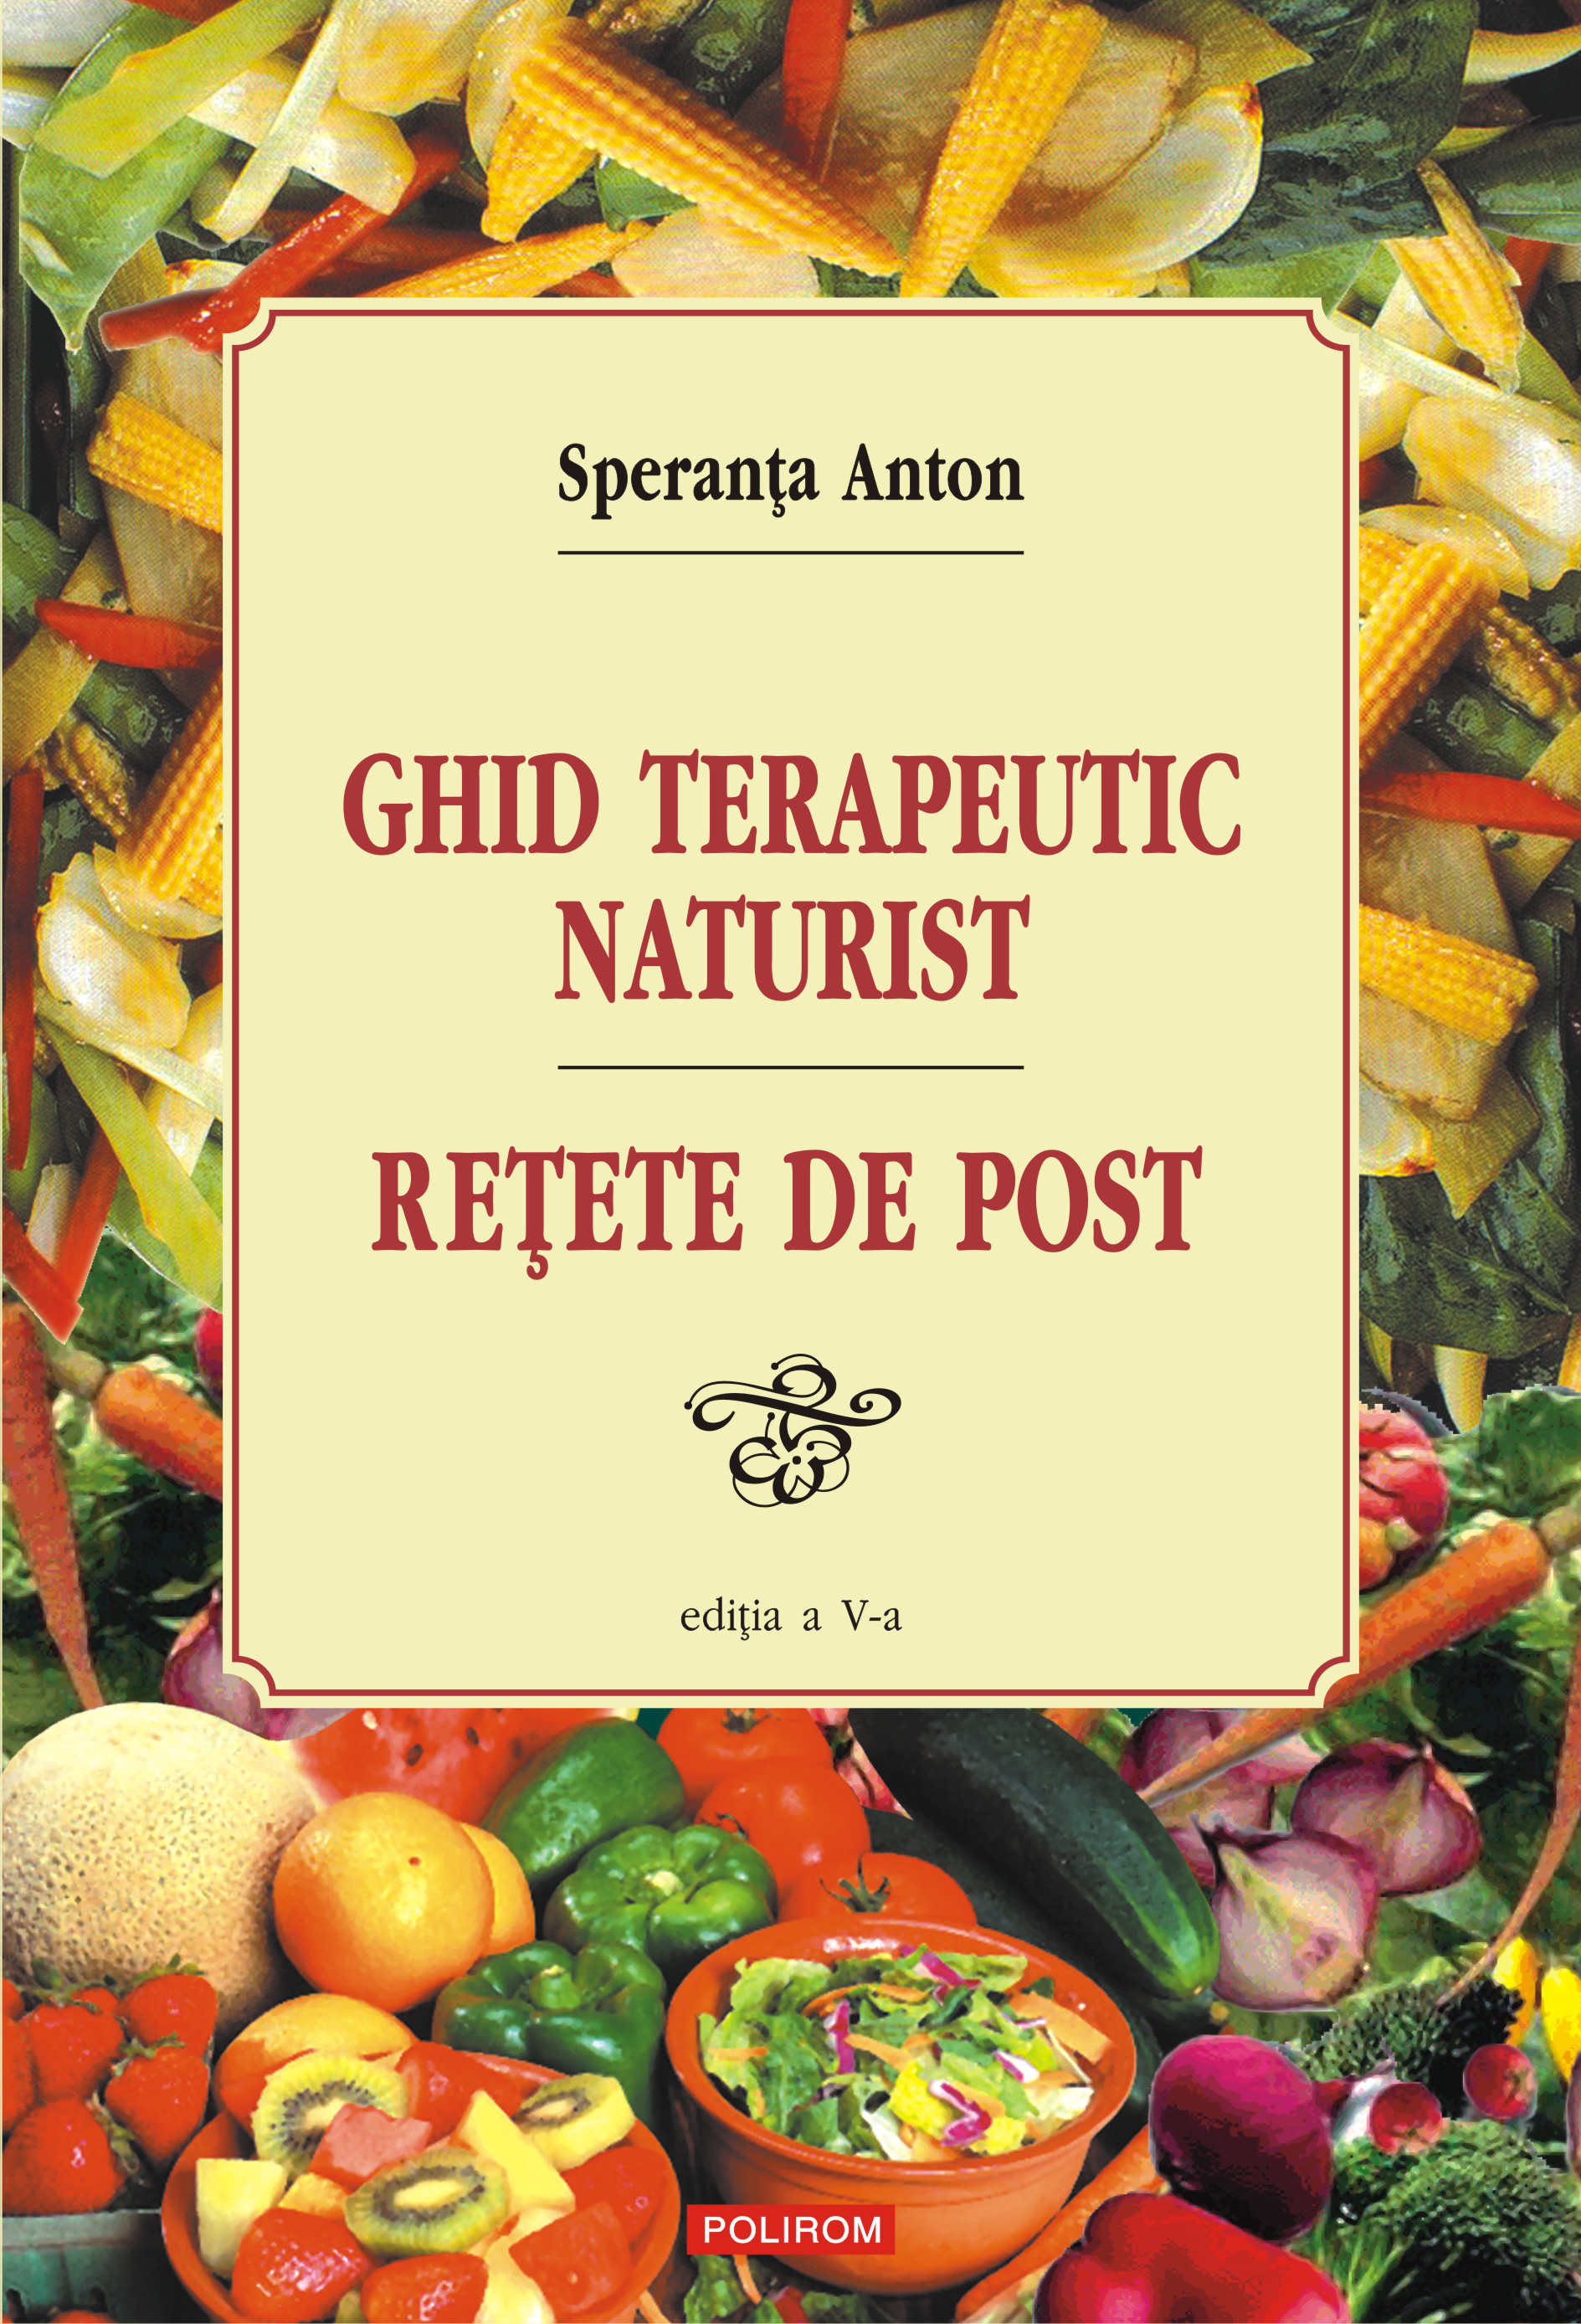 eBook Ghid terapeutic naturist - Speranta Anton